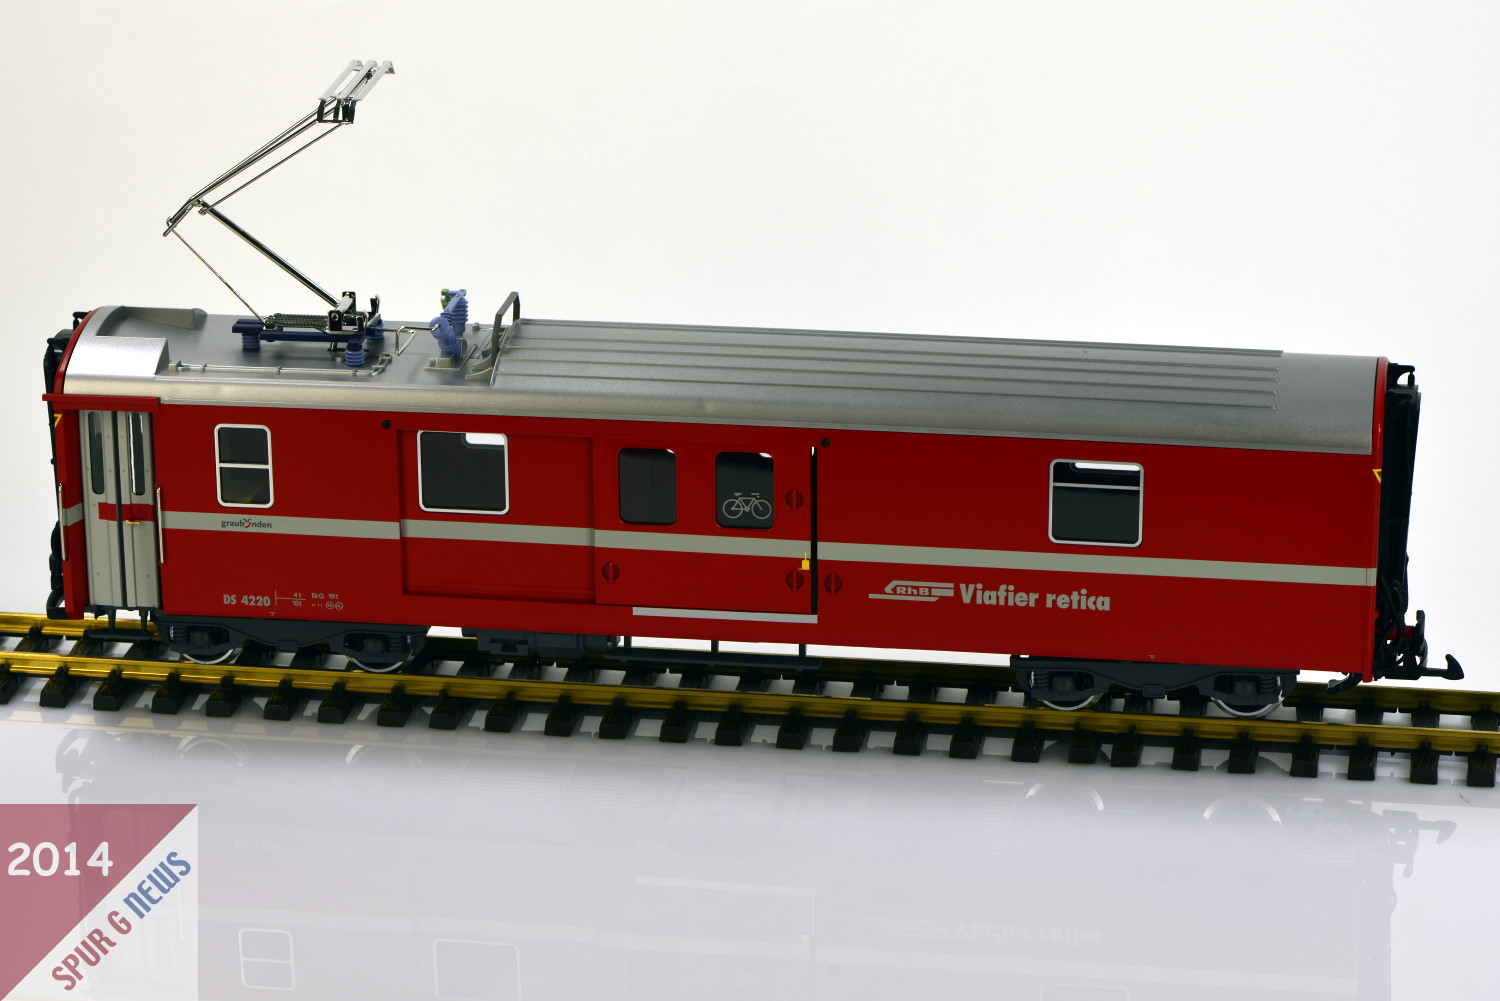 LGB Neuheit 2013 - ausgeliefert 2014 - der RhB Gepckwagen Art. Nr. 30691 - DS 4220. 